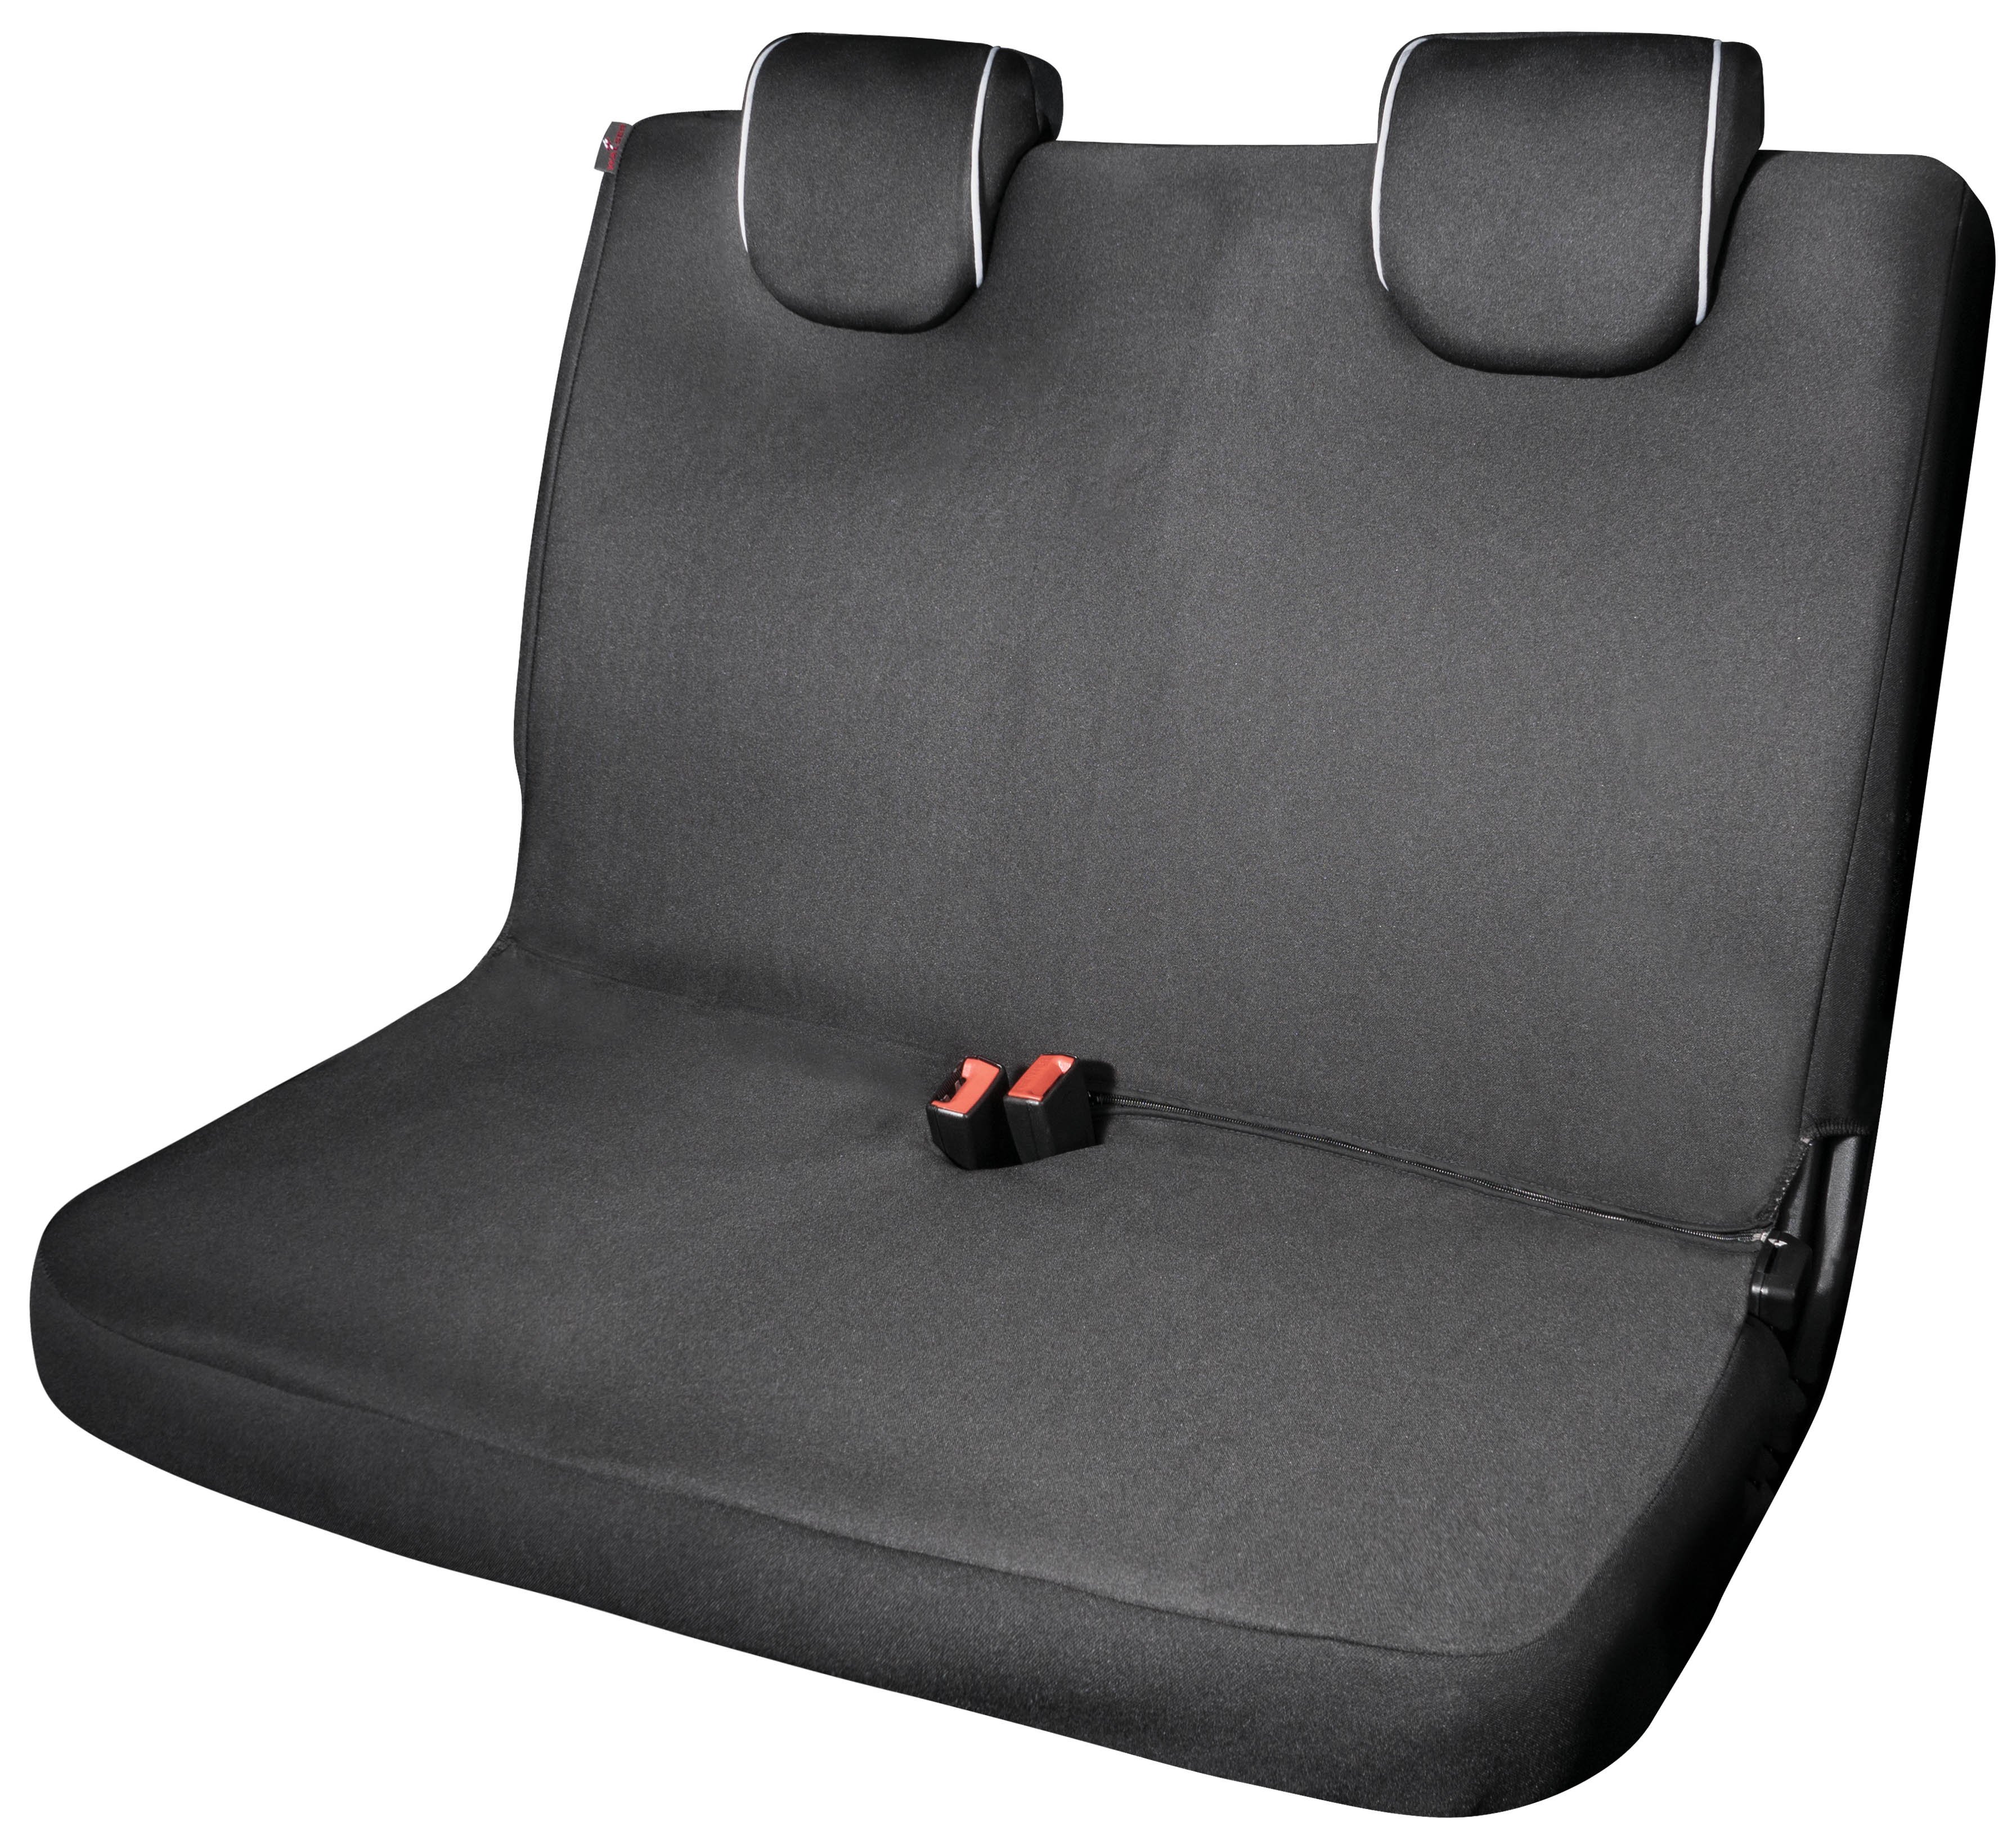 Auto stoelbeschermer Modulo voor Doppelbank zwart universeel passende stoelbeschermer